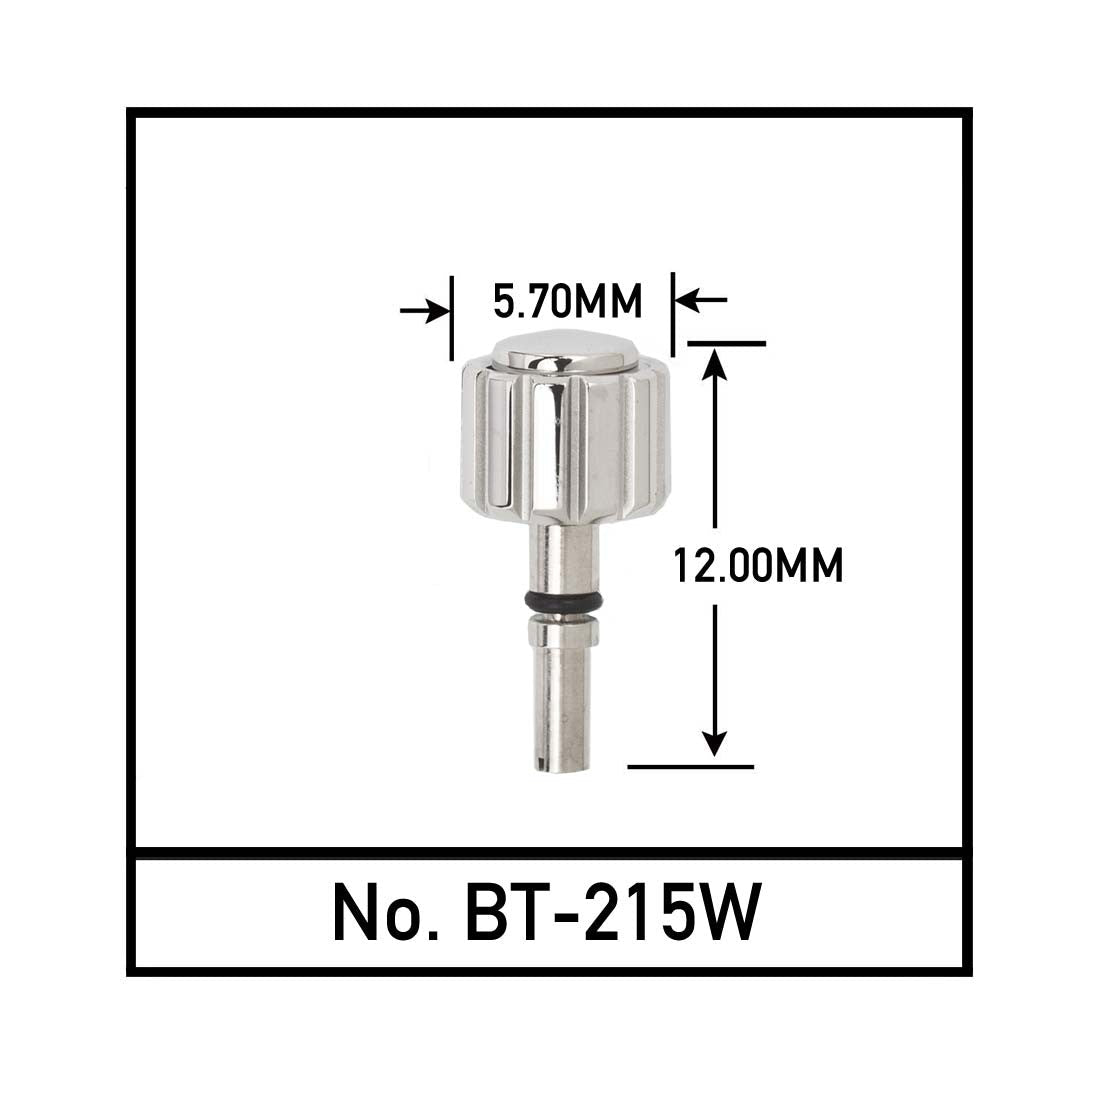 BT-215W, Generic Pusher to Fit BRTL. (5.7mm x4.0mm x12mm)